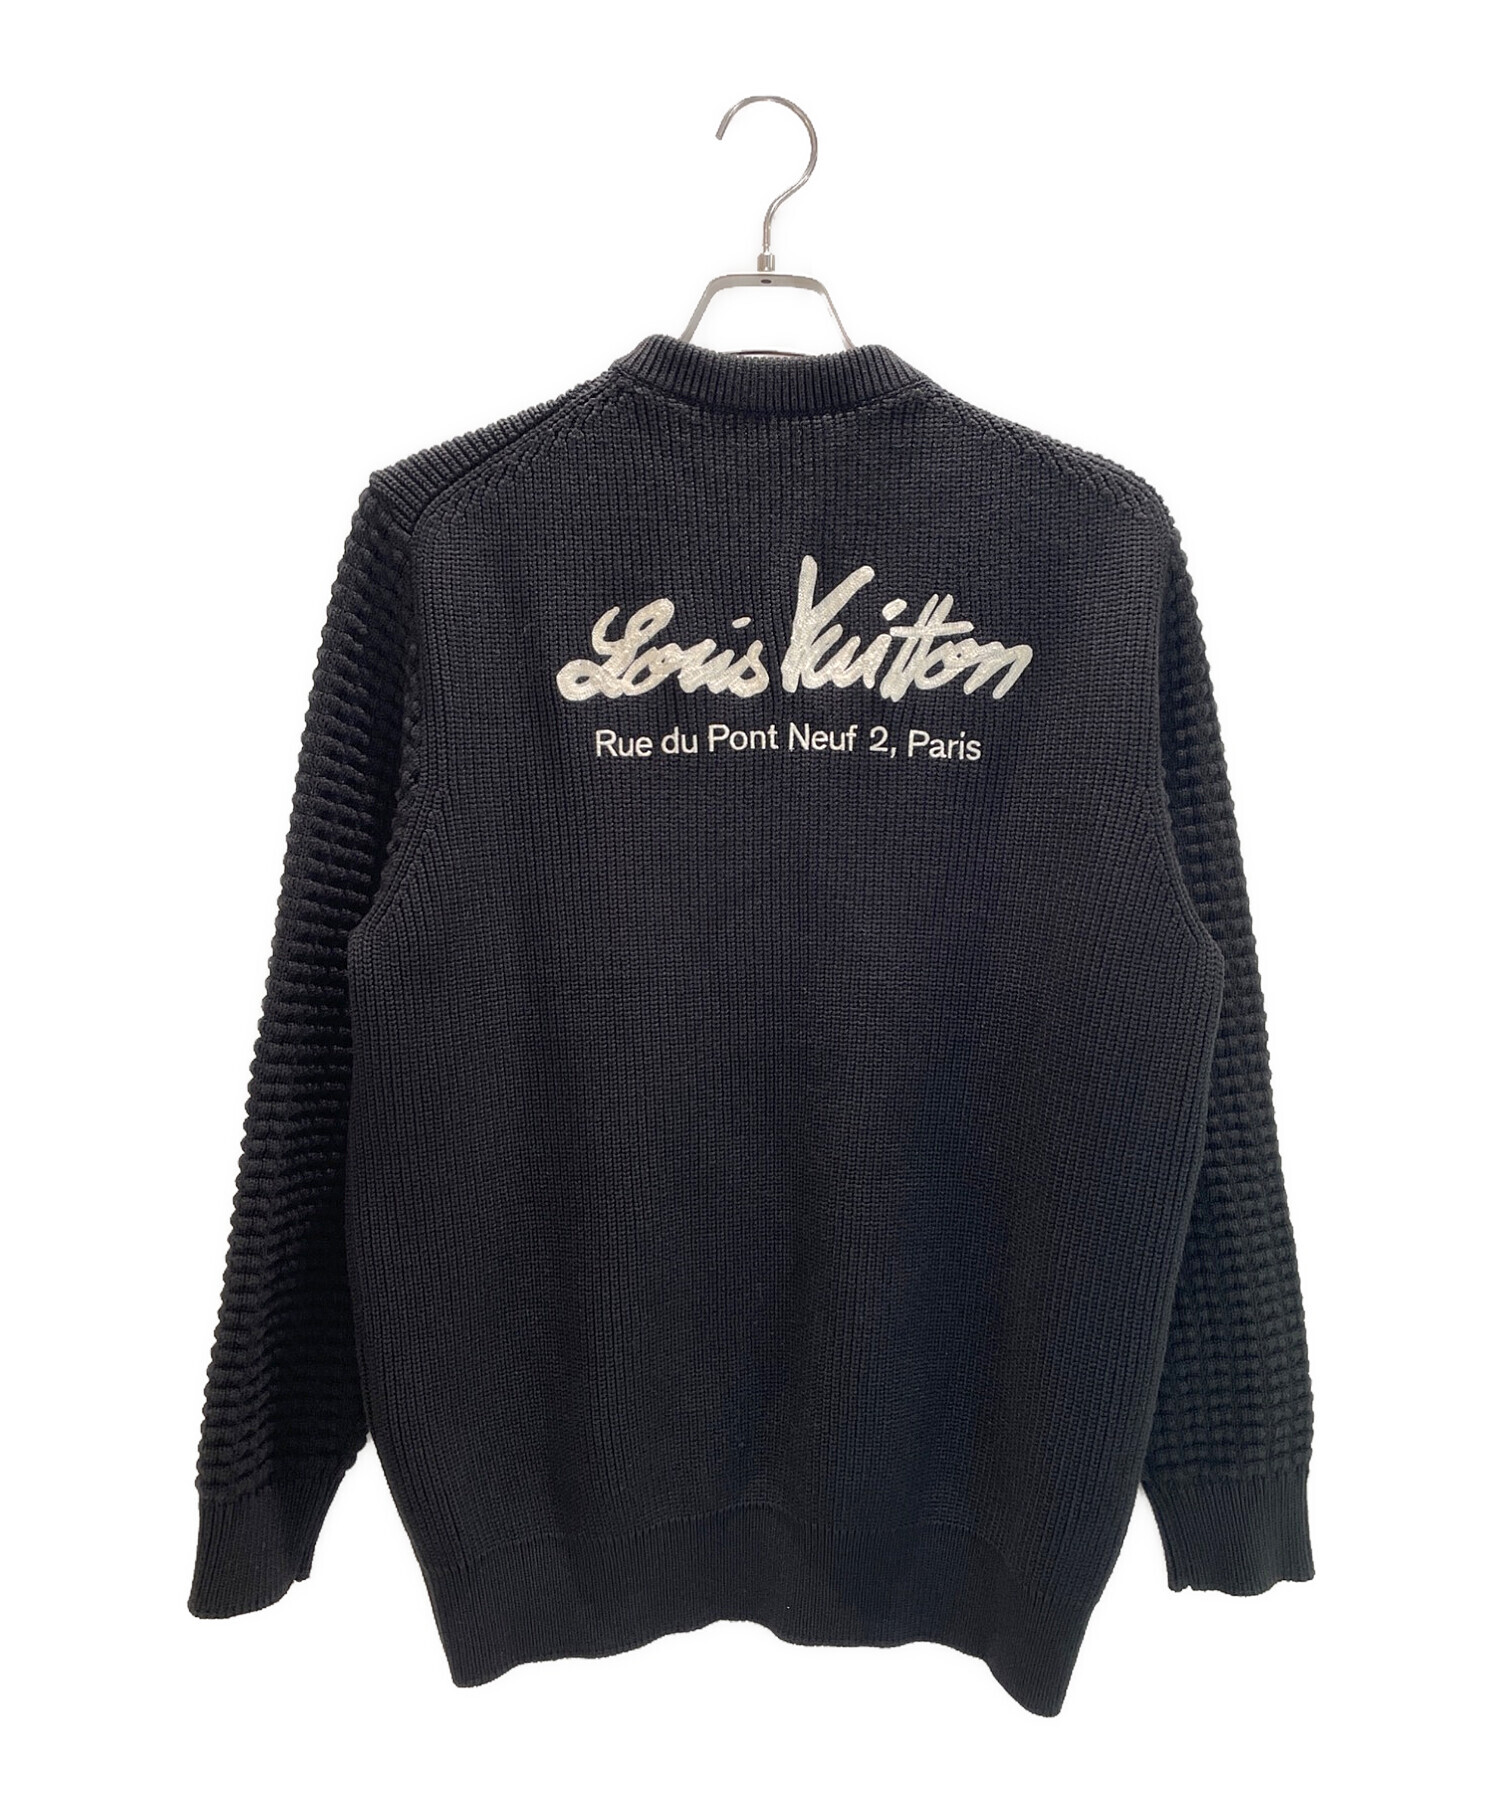 LOUIS VUITTON (ルイ ヴィトン) ミックスステッチクルーネックセーター ブラック サイズ:M